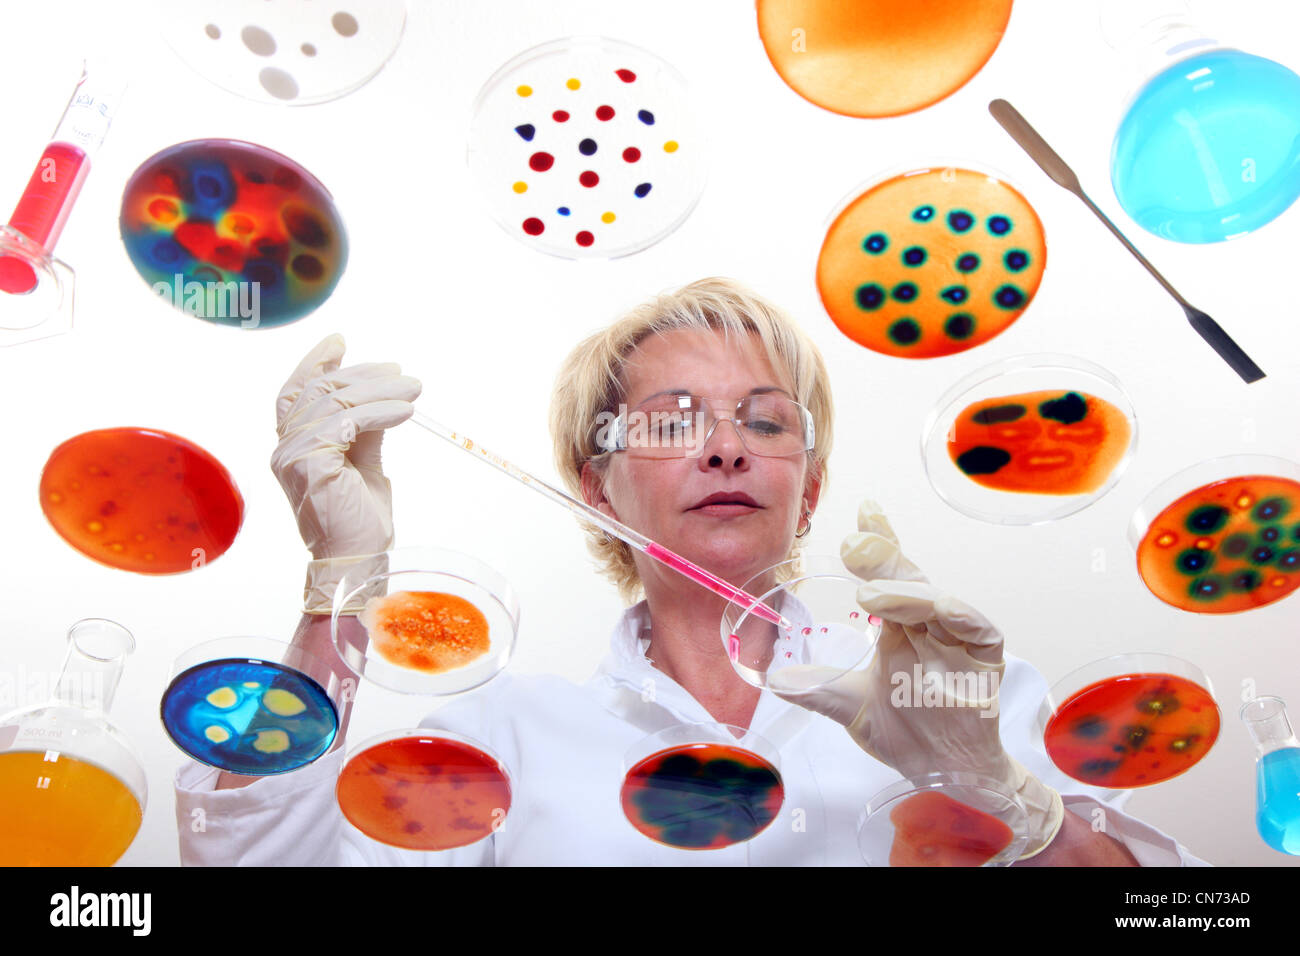 Técnico de laboratorio trabajando en el laboratorio con cultivos de bacterias en placas de Petri. Visto a través de una mesa de vidrio. Foto de stock